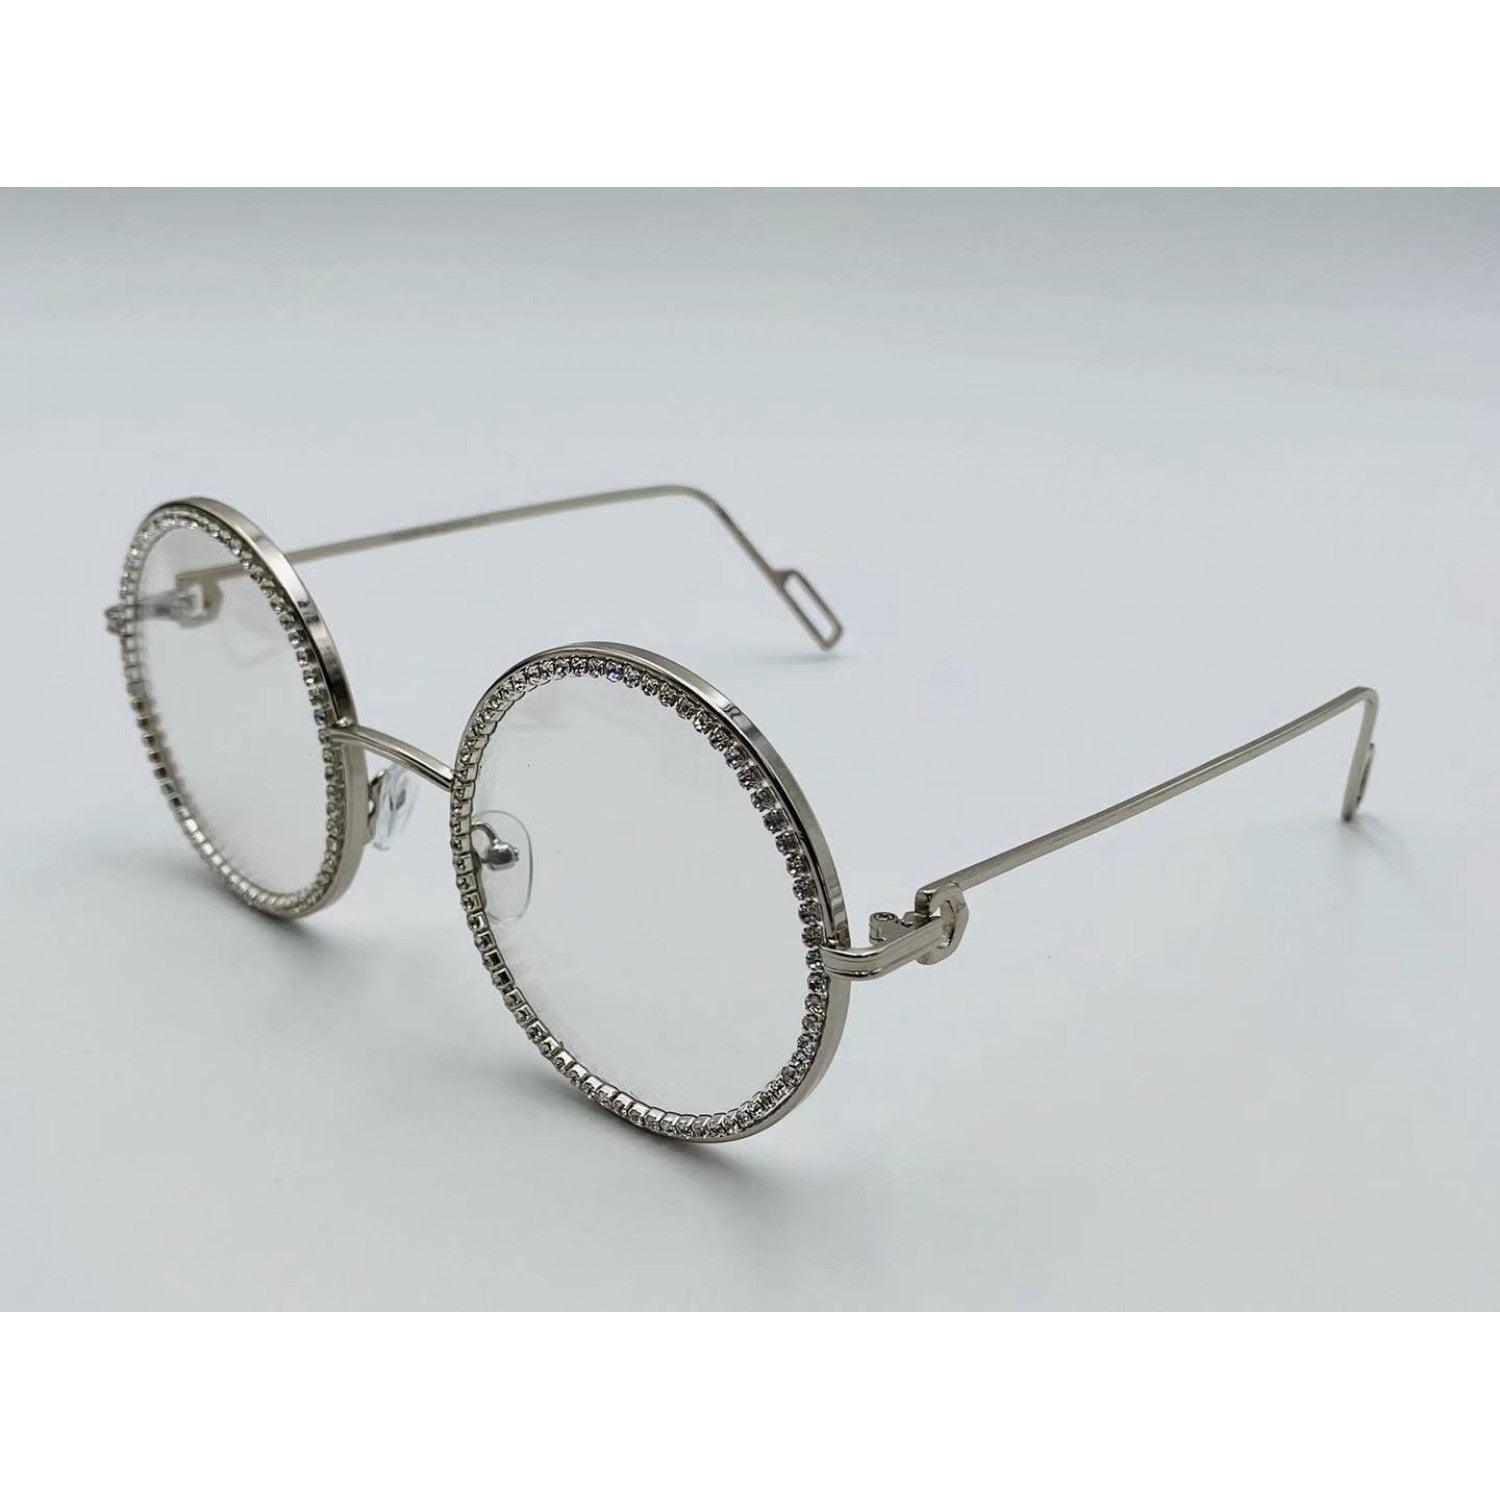 Round Rhinestone Glasses - Weekend Shade Sunglasses